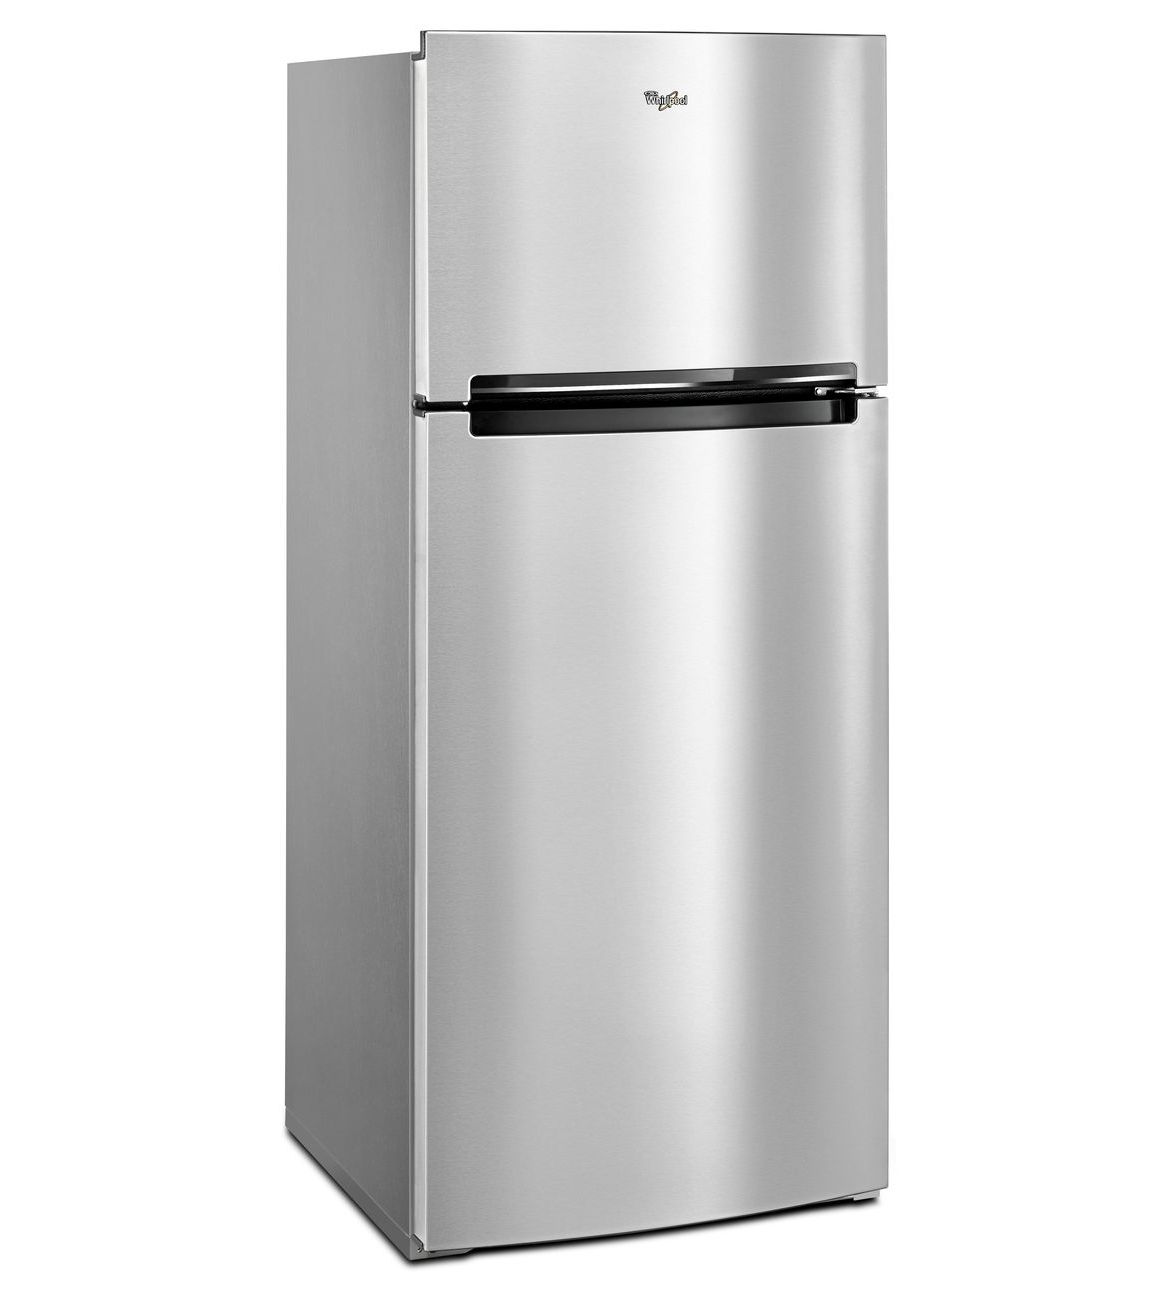 Ремонт холодильников вирпул в москве. Whirlpool холодильник двухкамерный. Холодильник Whirlpool cb367. Whirlpool холодильник двухкамерный модели. Холодильник Вирпул 2020.